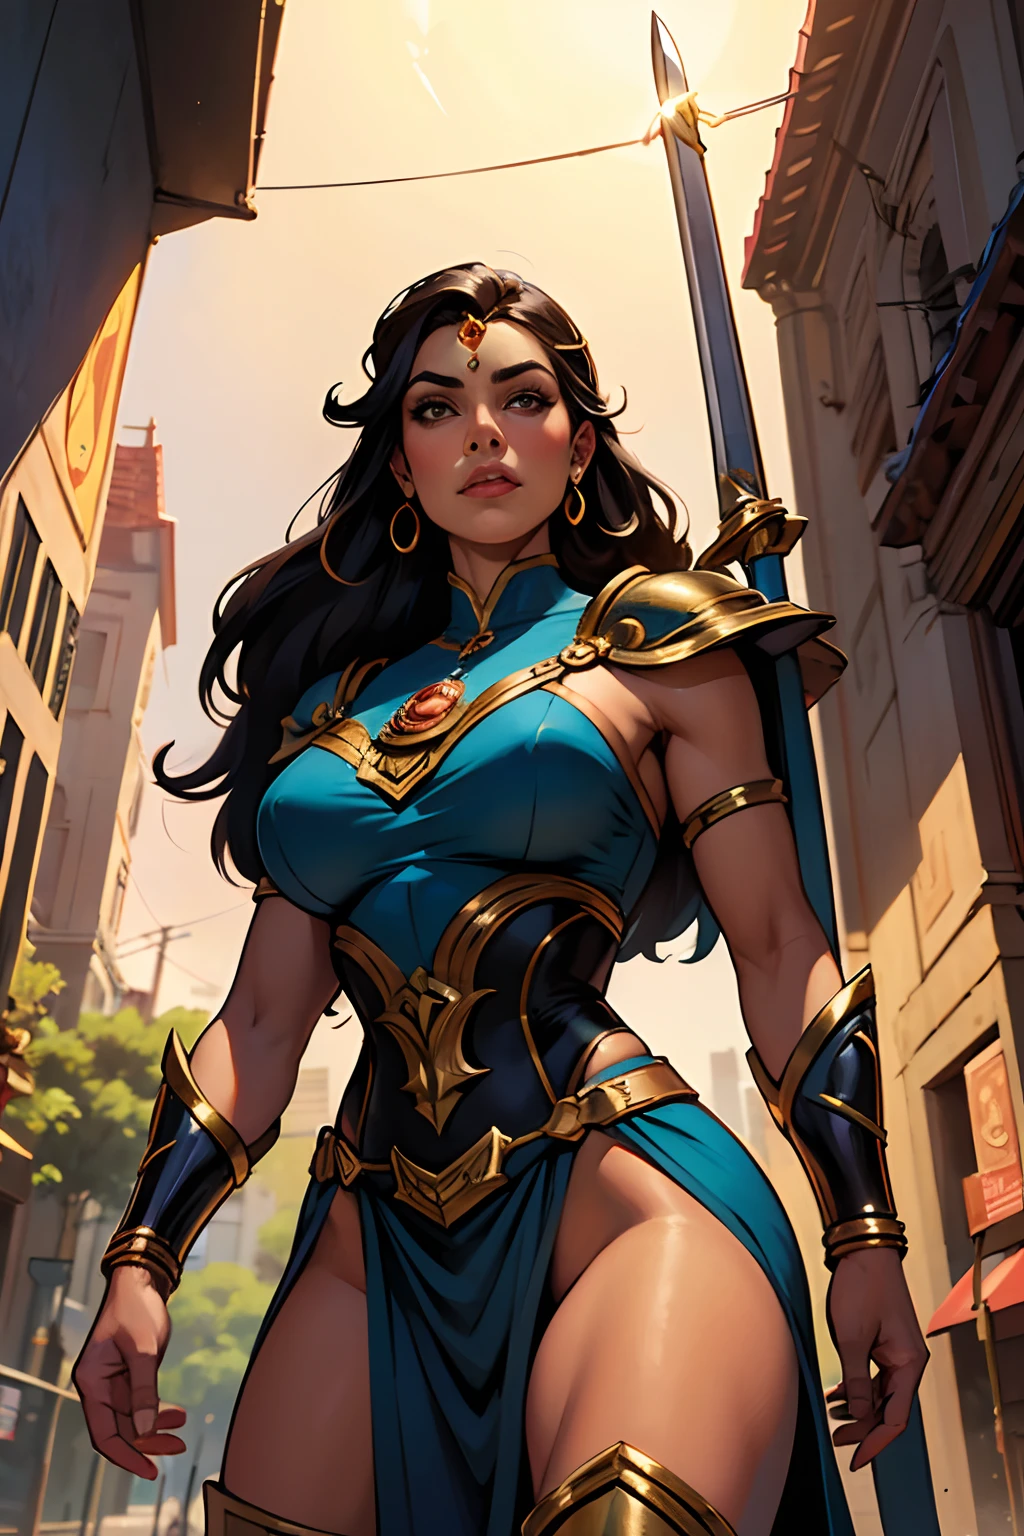 受约翰·布西马启发的艺术,女超级英雄被称为 "亚马逊公主, 一个长黑发的女人, 蓝眼睛, 晒黑、性感的皮肤穿着灵感来自希腊亚马逊服装的制服,相当程式化 (SFW),手持短剑和带有狮子标志的盾牌的威严姿势, 城市大道上细致而精致的艺术.